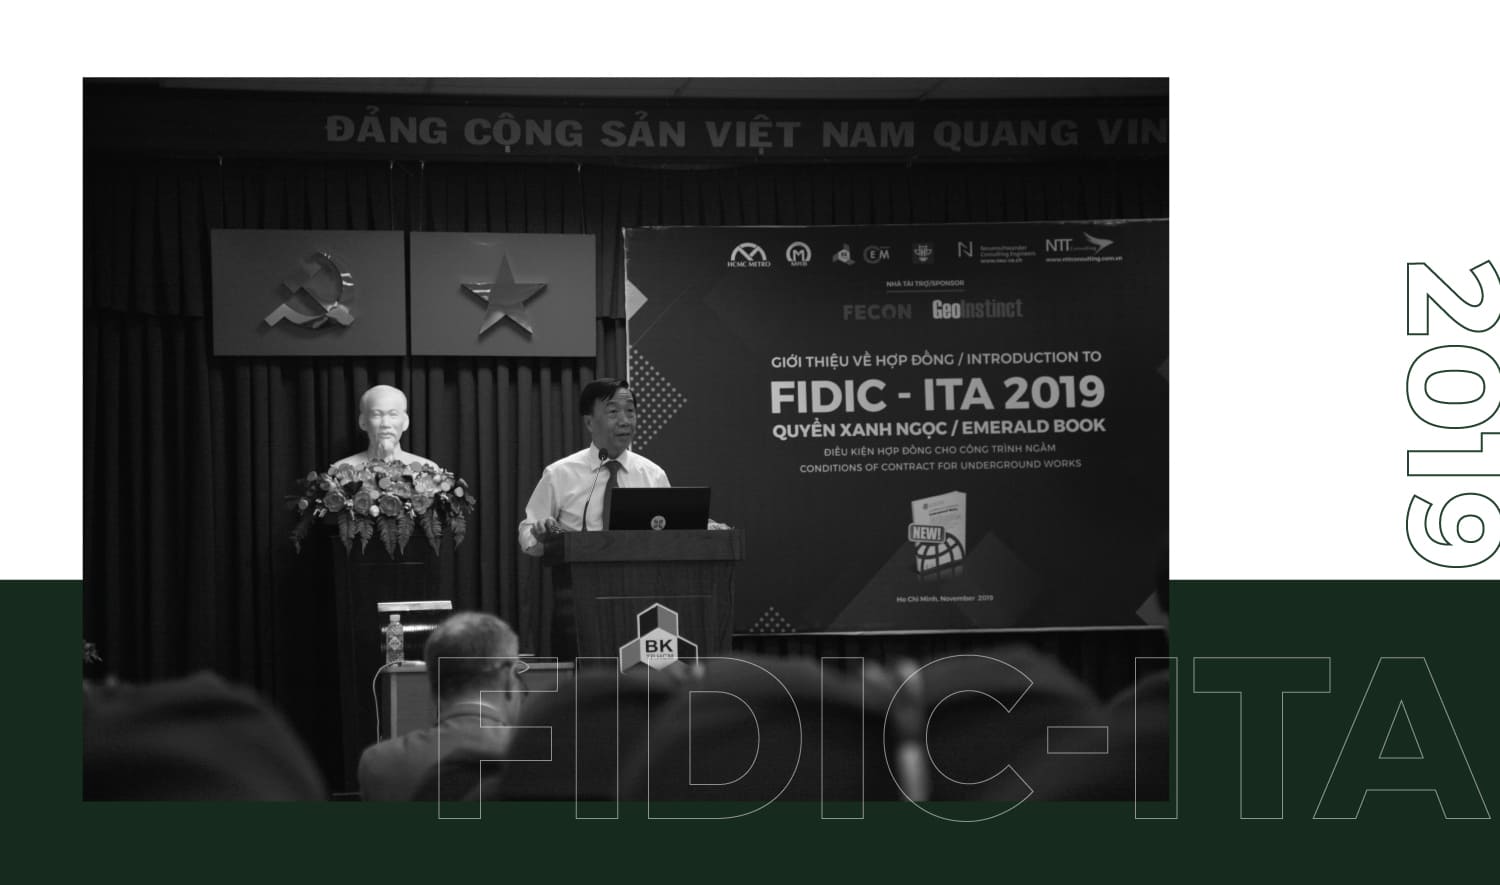 Fidic-Ita 2019 15